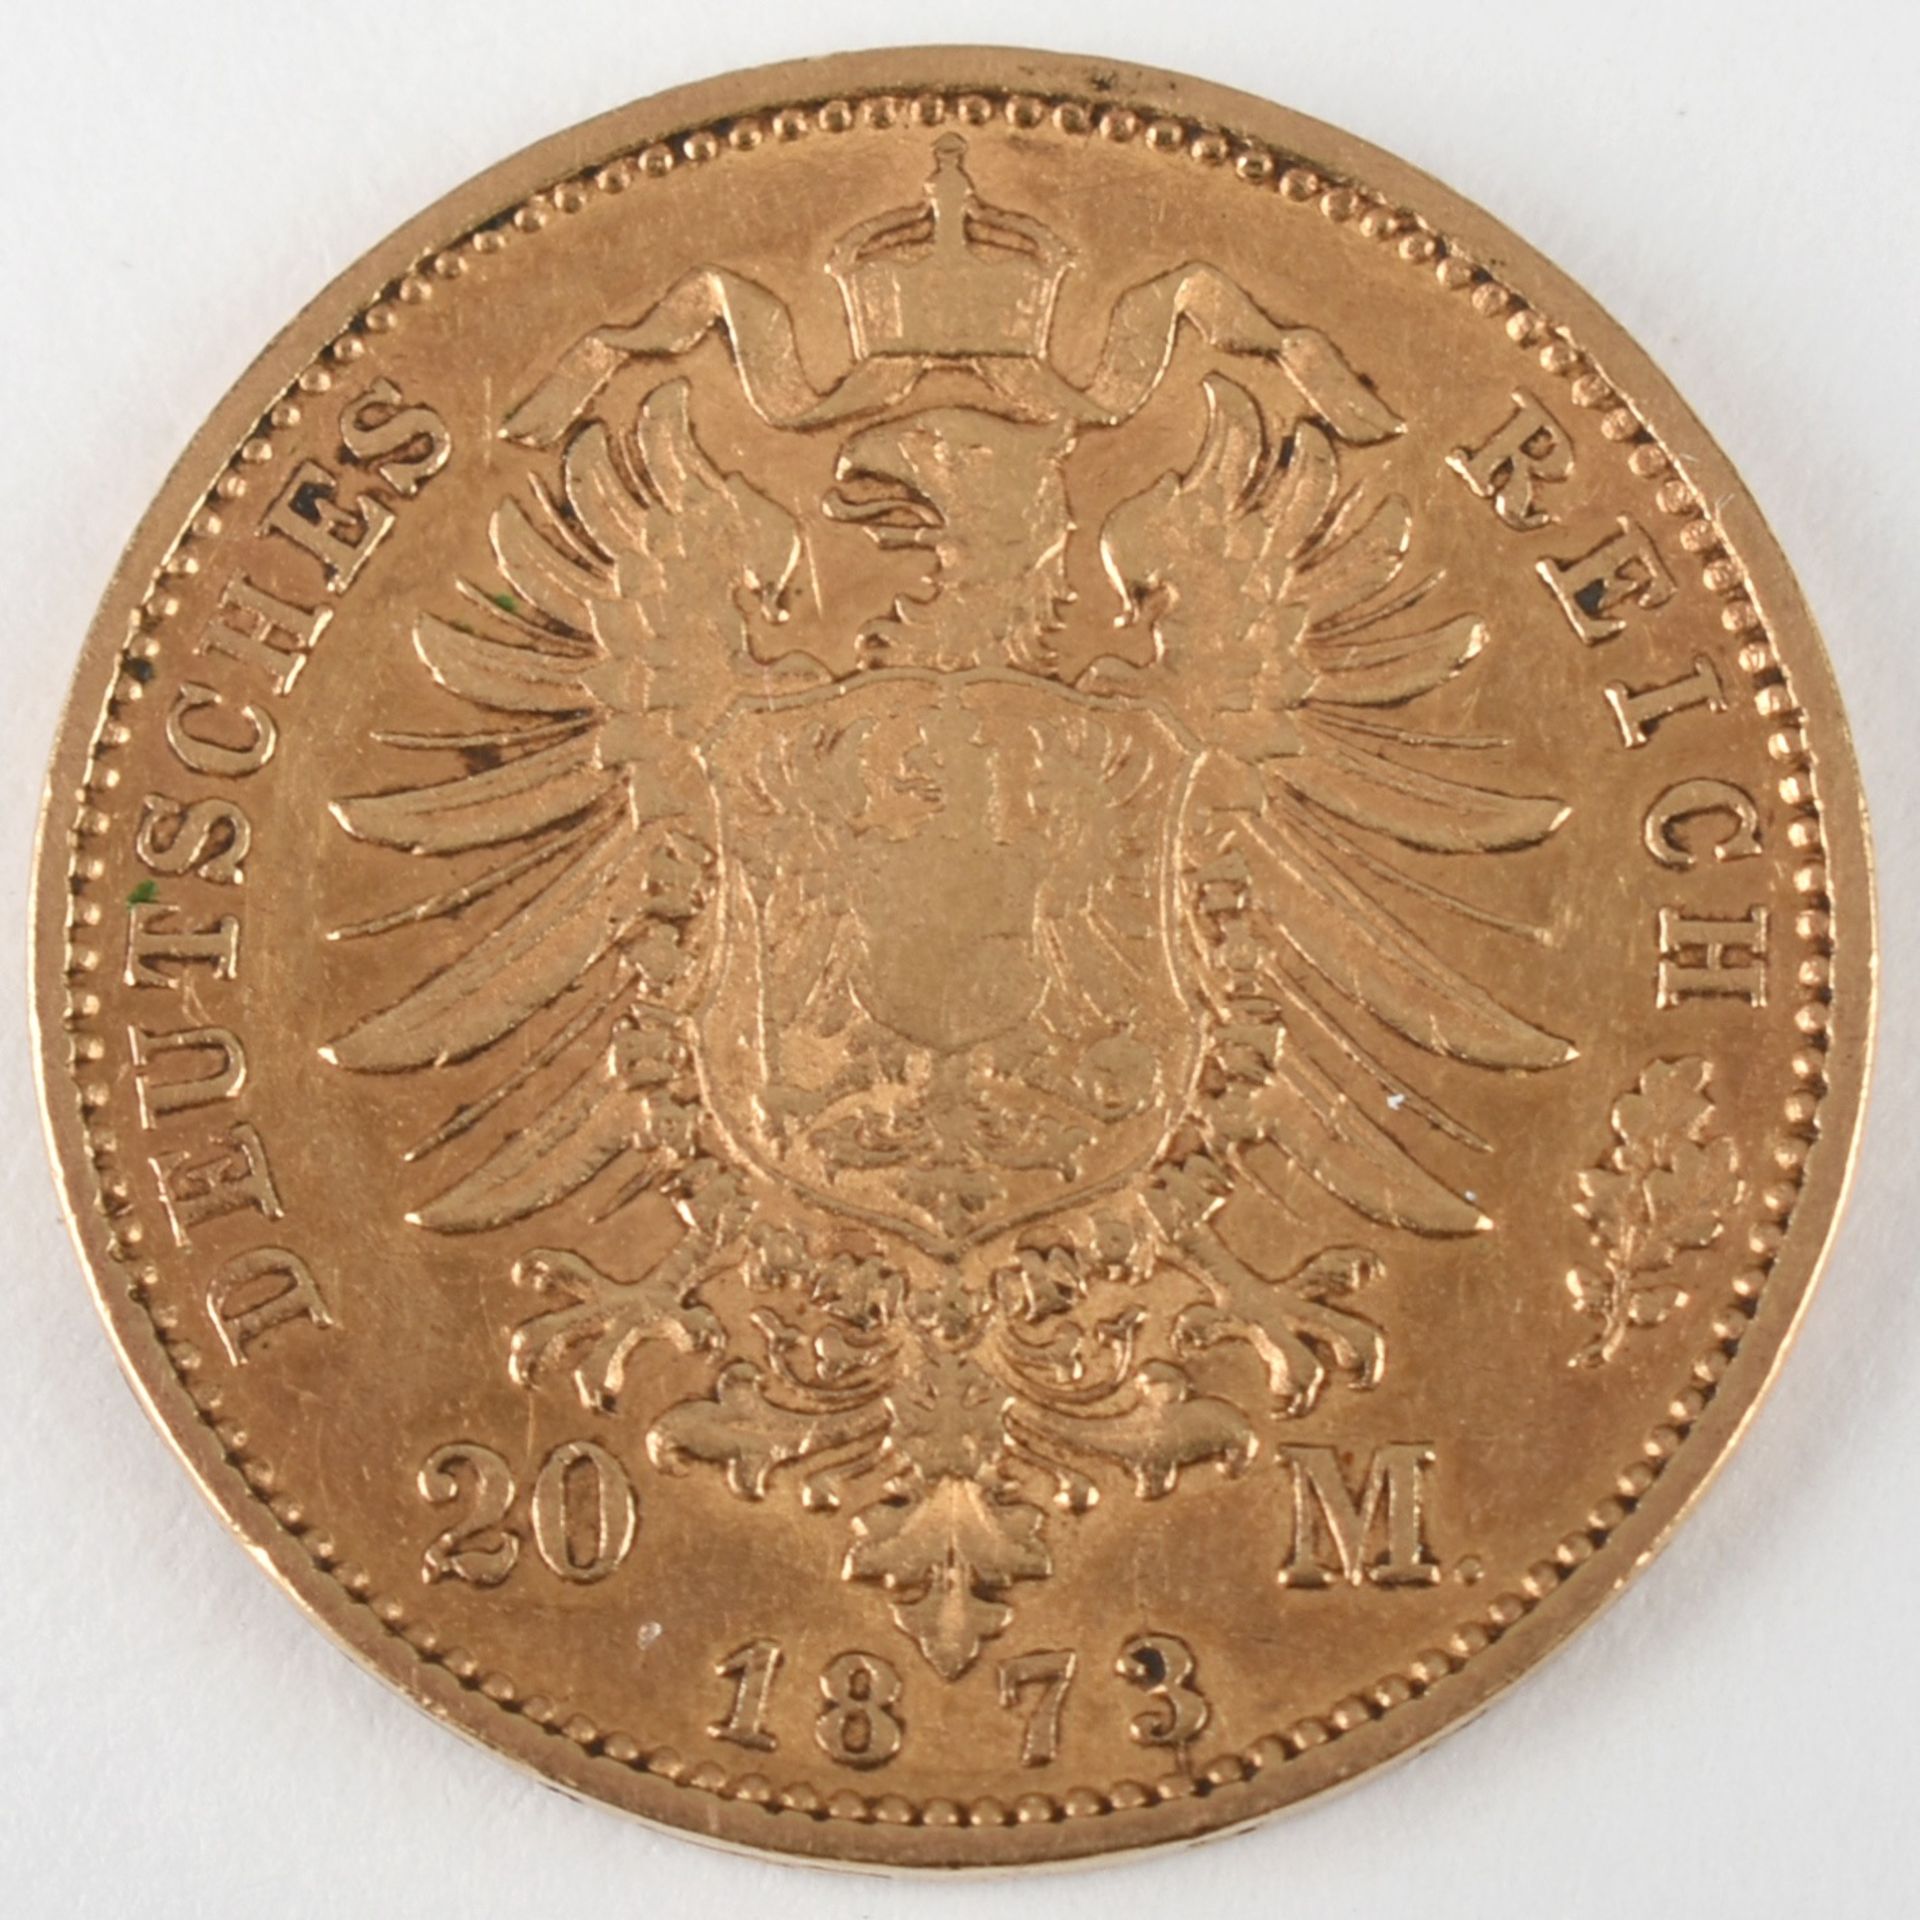 Goldmünze Kaiserreich - Hessen 1873 20 Mark in Gold, 900/1000, 7,96 g, D ca. 22,5 mm, av. Ludwig III - Bild 3 aus 3